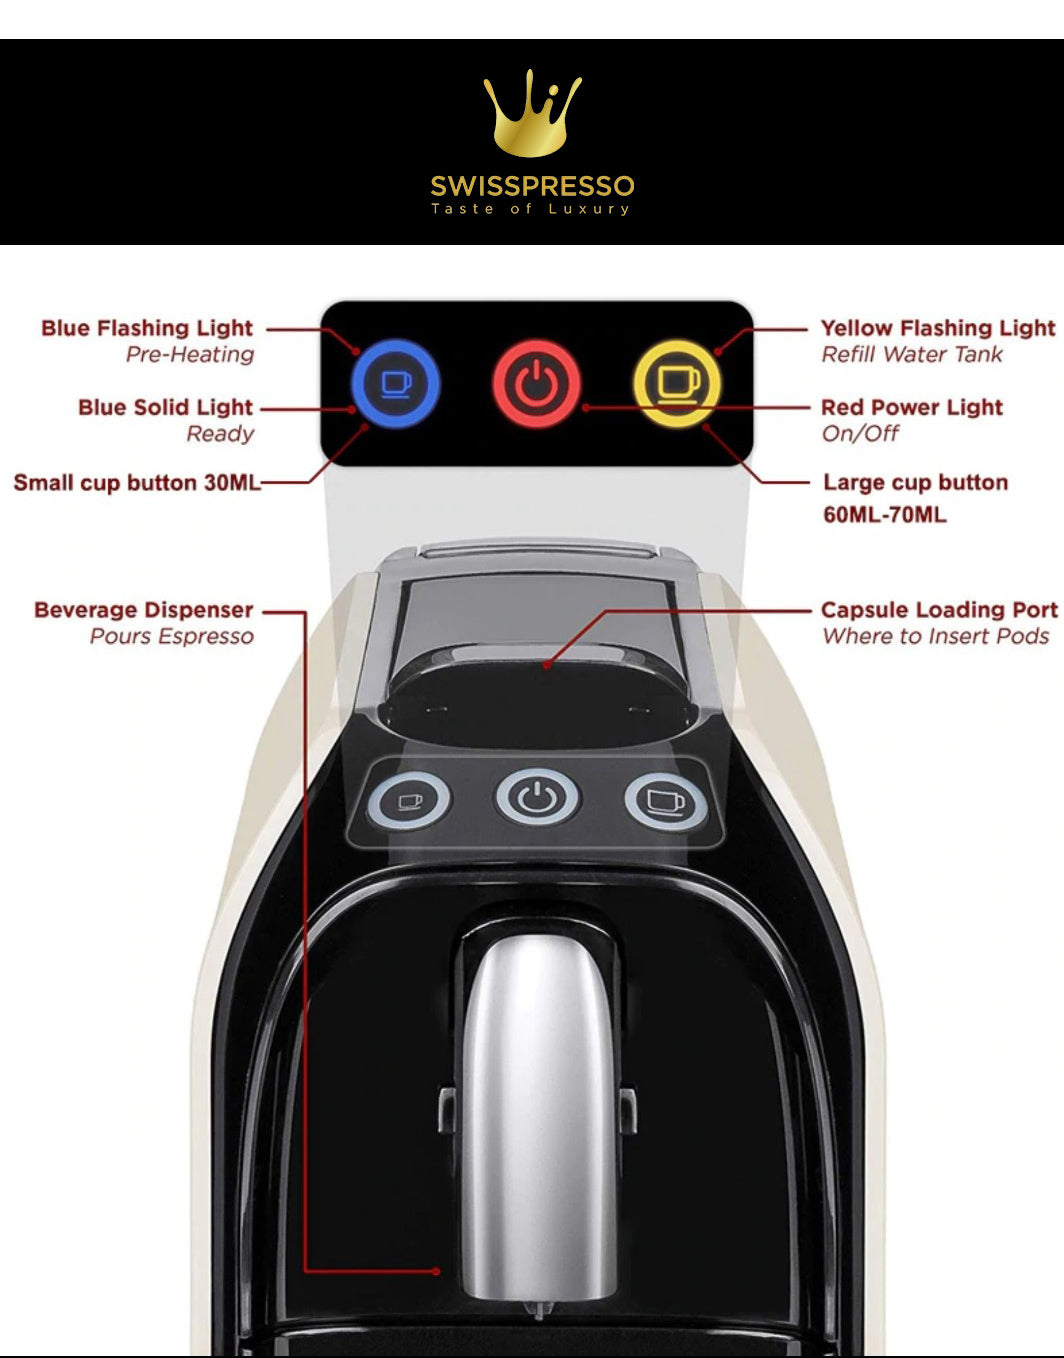 Swiss Presso Espresso Coffee Machine Föhn Nespresso Compatible Black